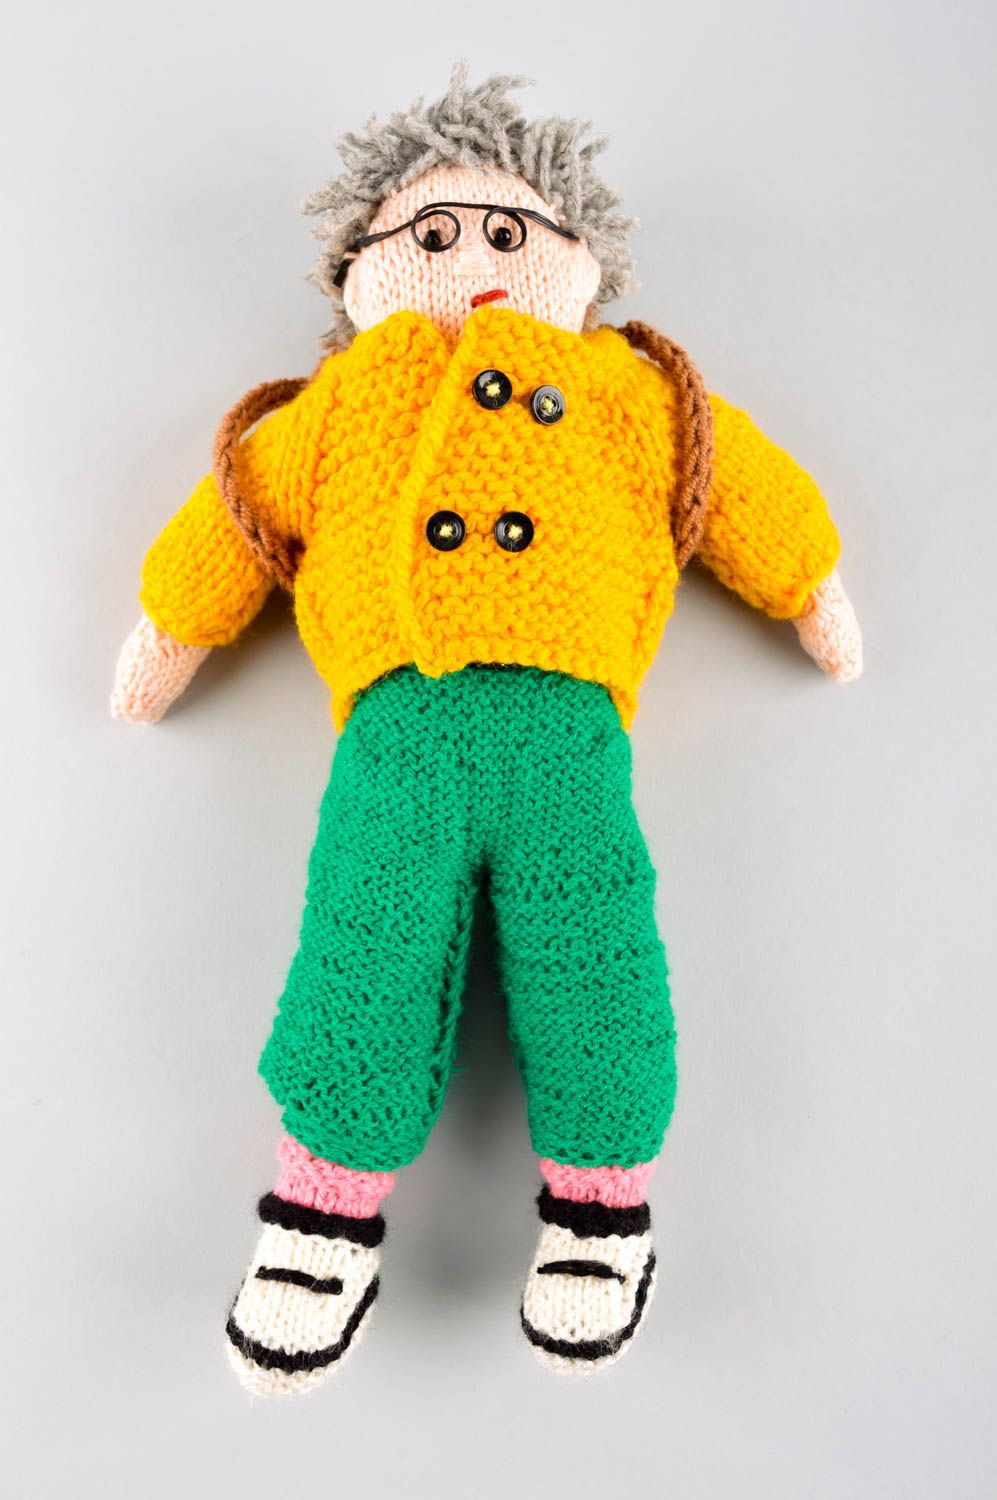 Handmade doll crocheted doll stuffed toy for babies nursery decor ideas photo 2